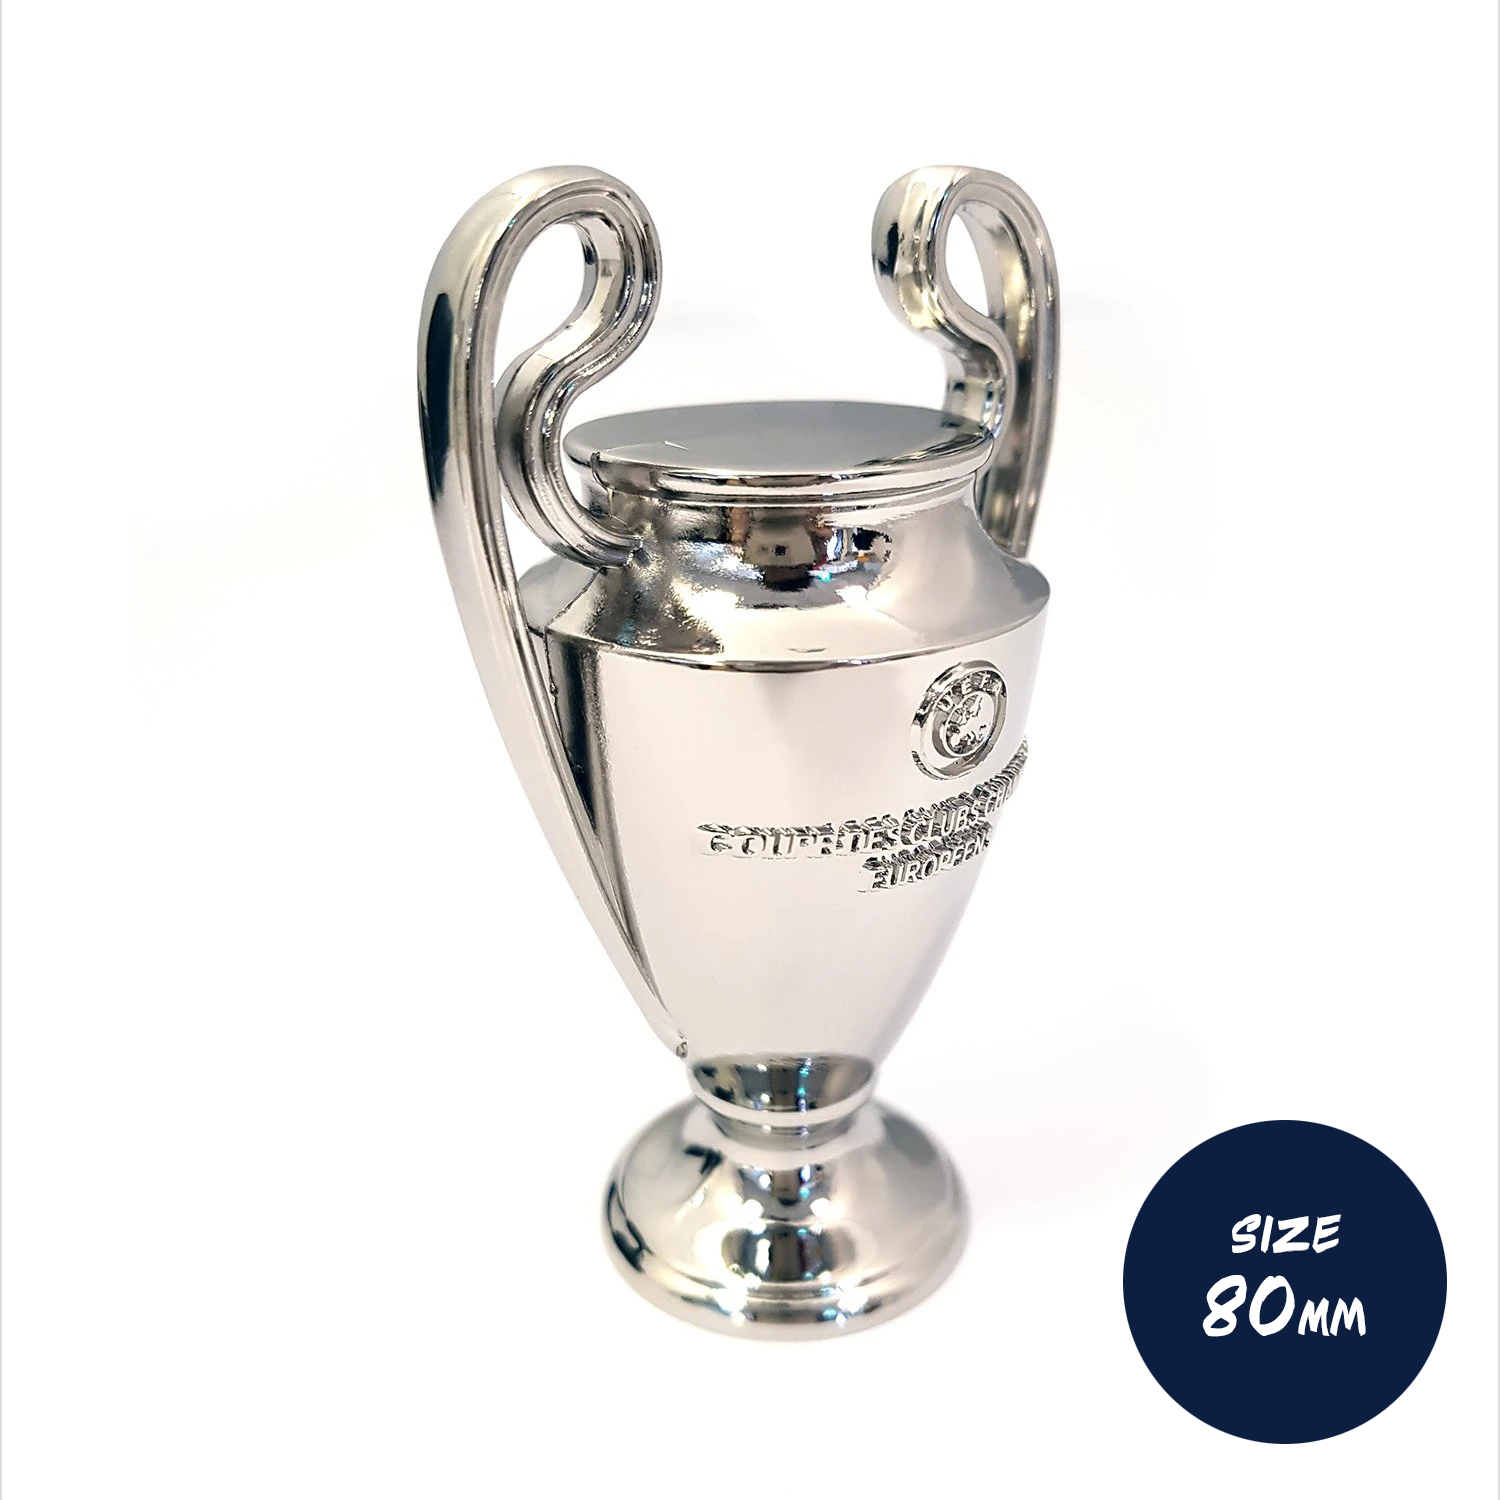 Étonnant trophée gonflable de ligue des champions avec des designs